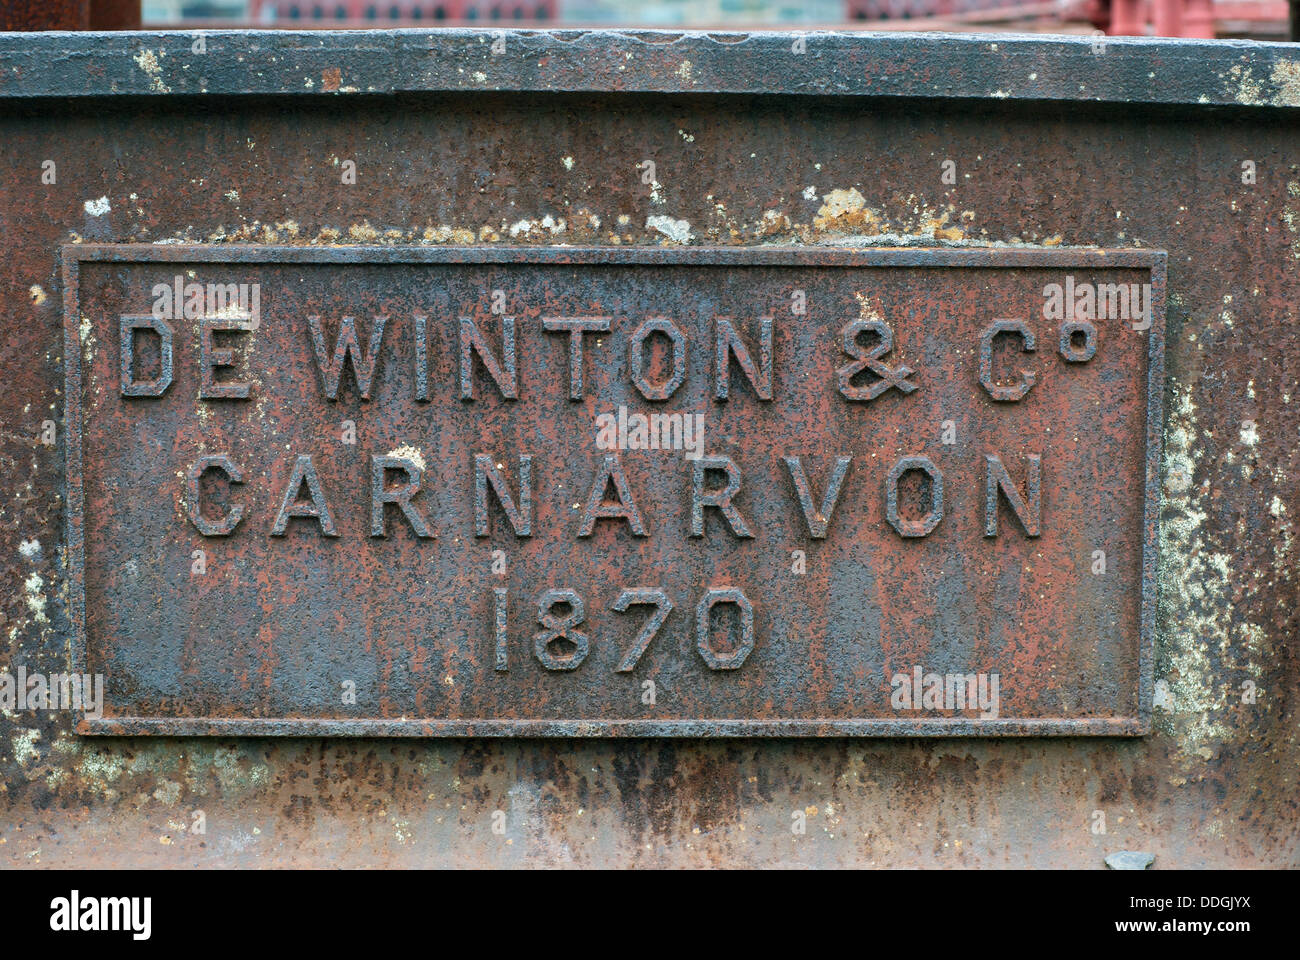 D E Winton & Co Carnarvon 1870 plaque au National Slate Museum Llanberis au Pays de Galles Banque D'Images